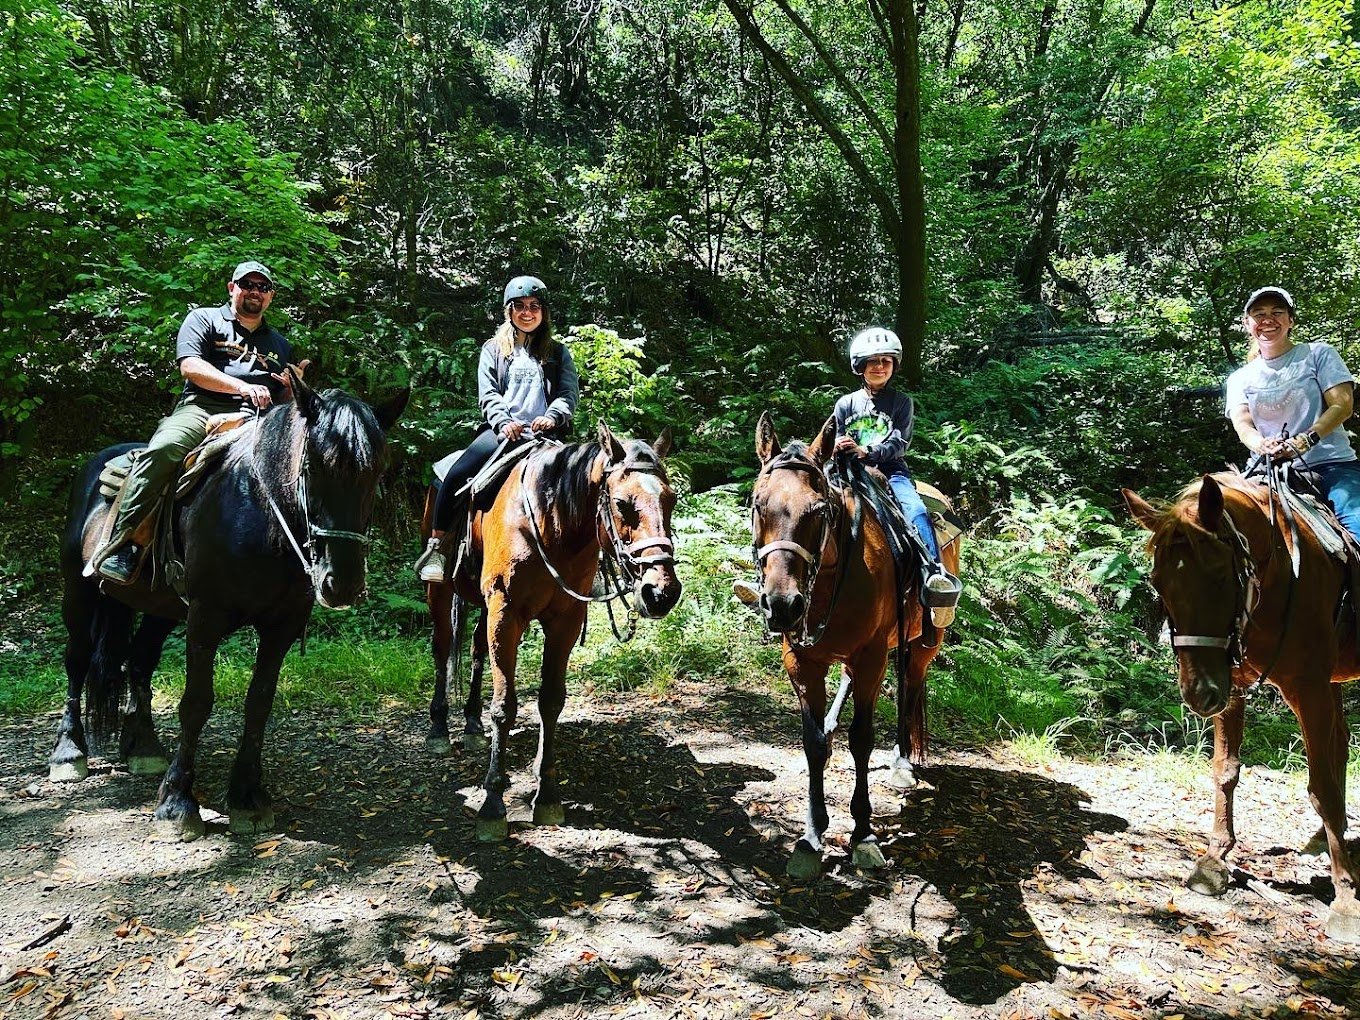 Family Smiling On Horseback In Woods